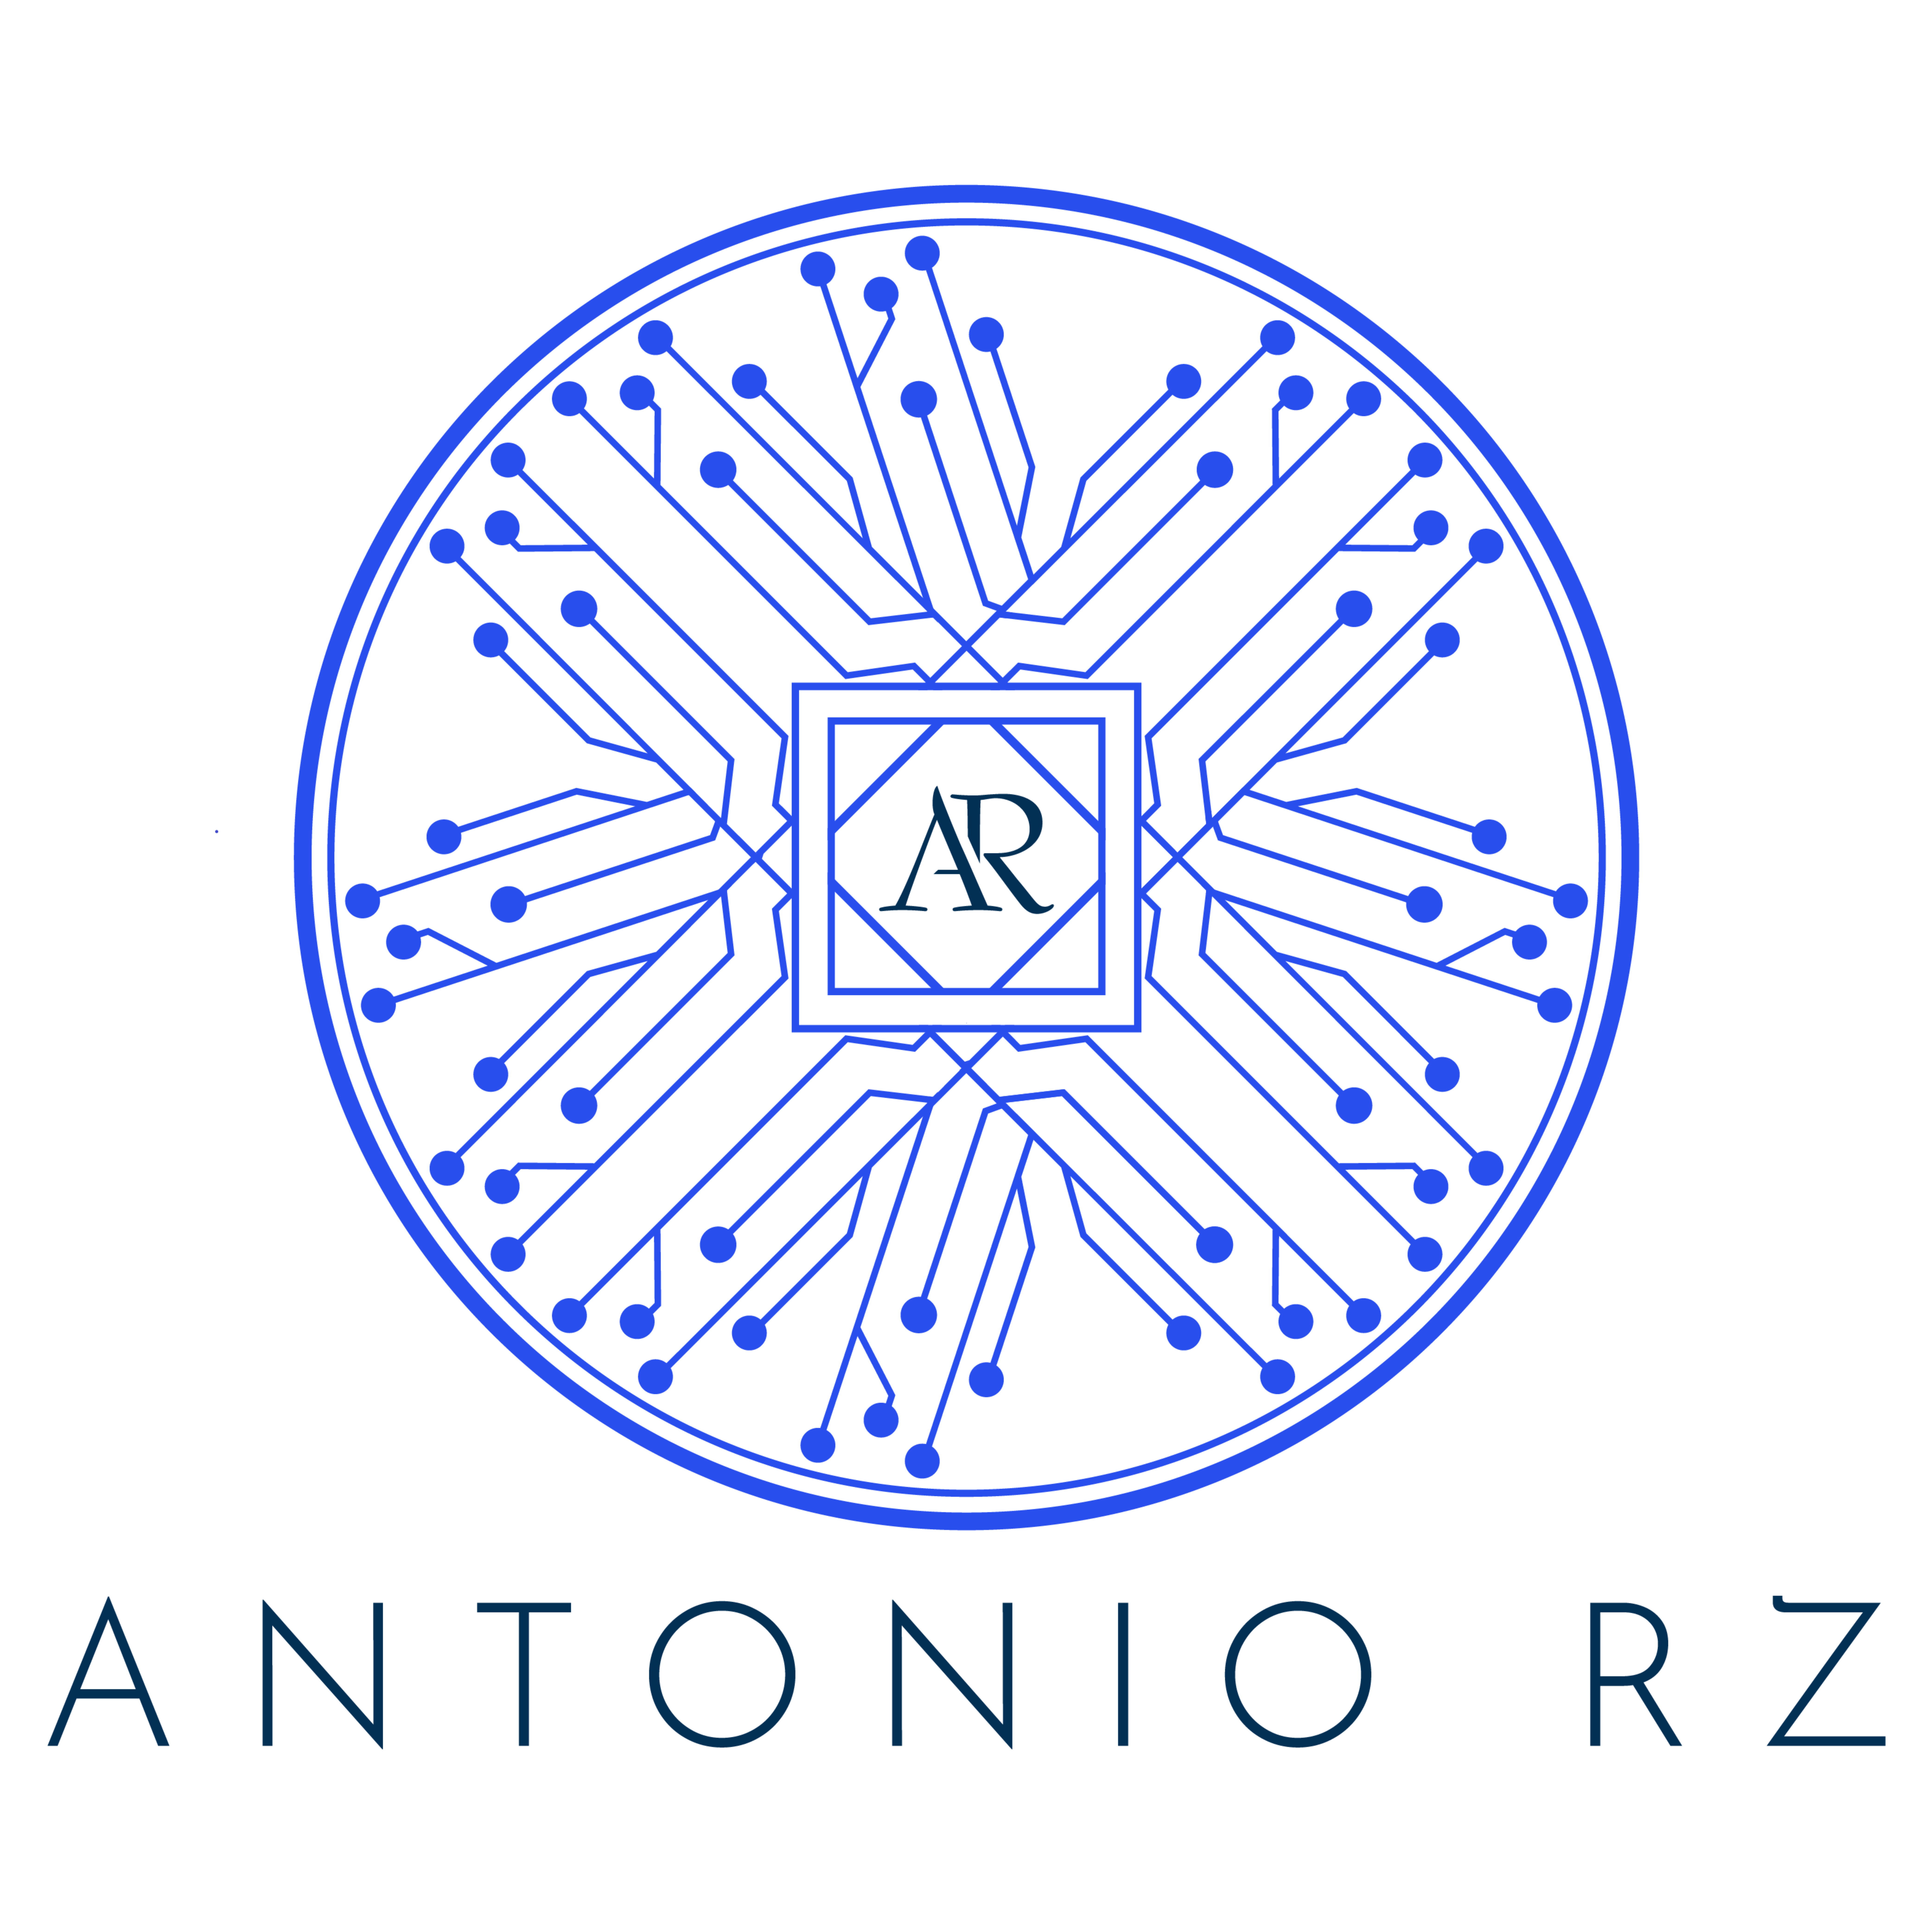 AntonioRz